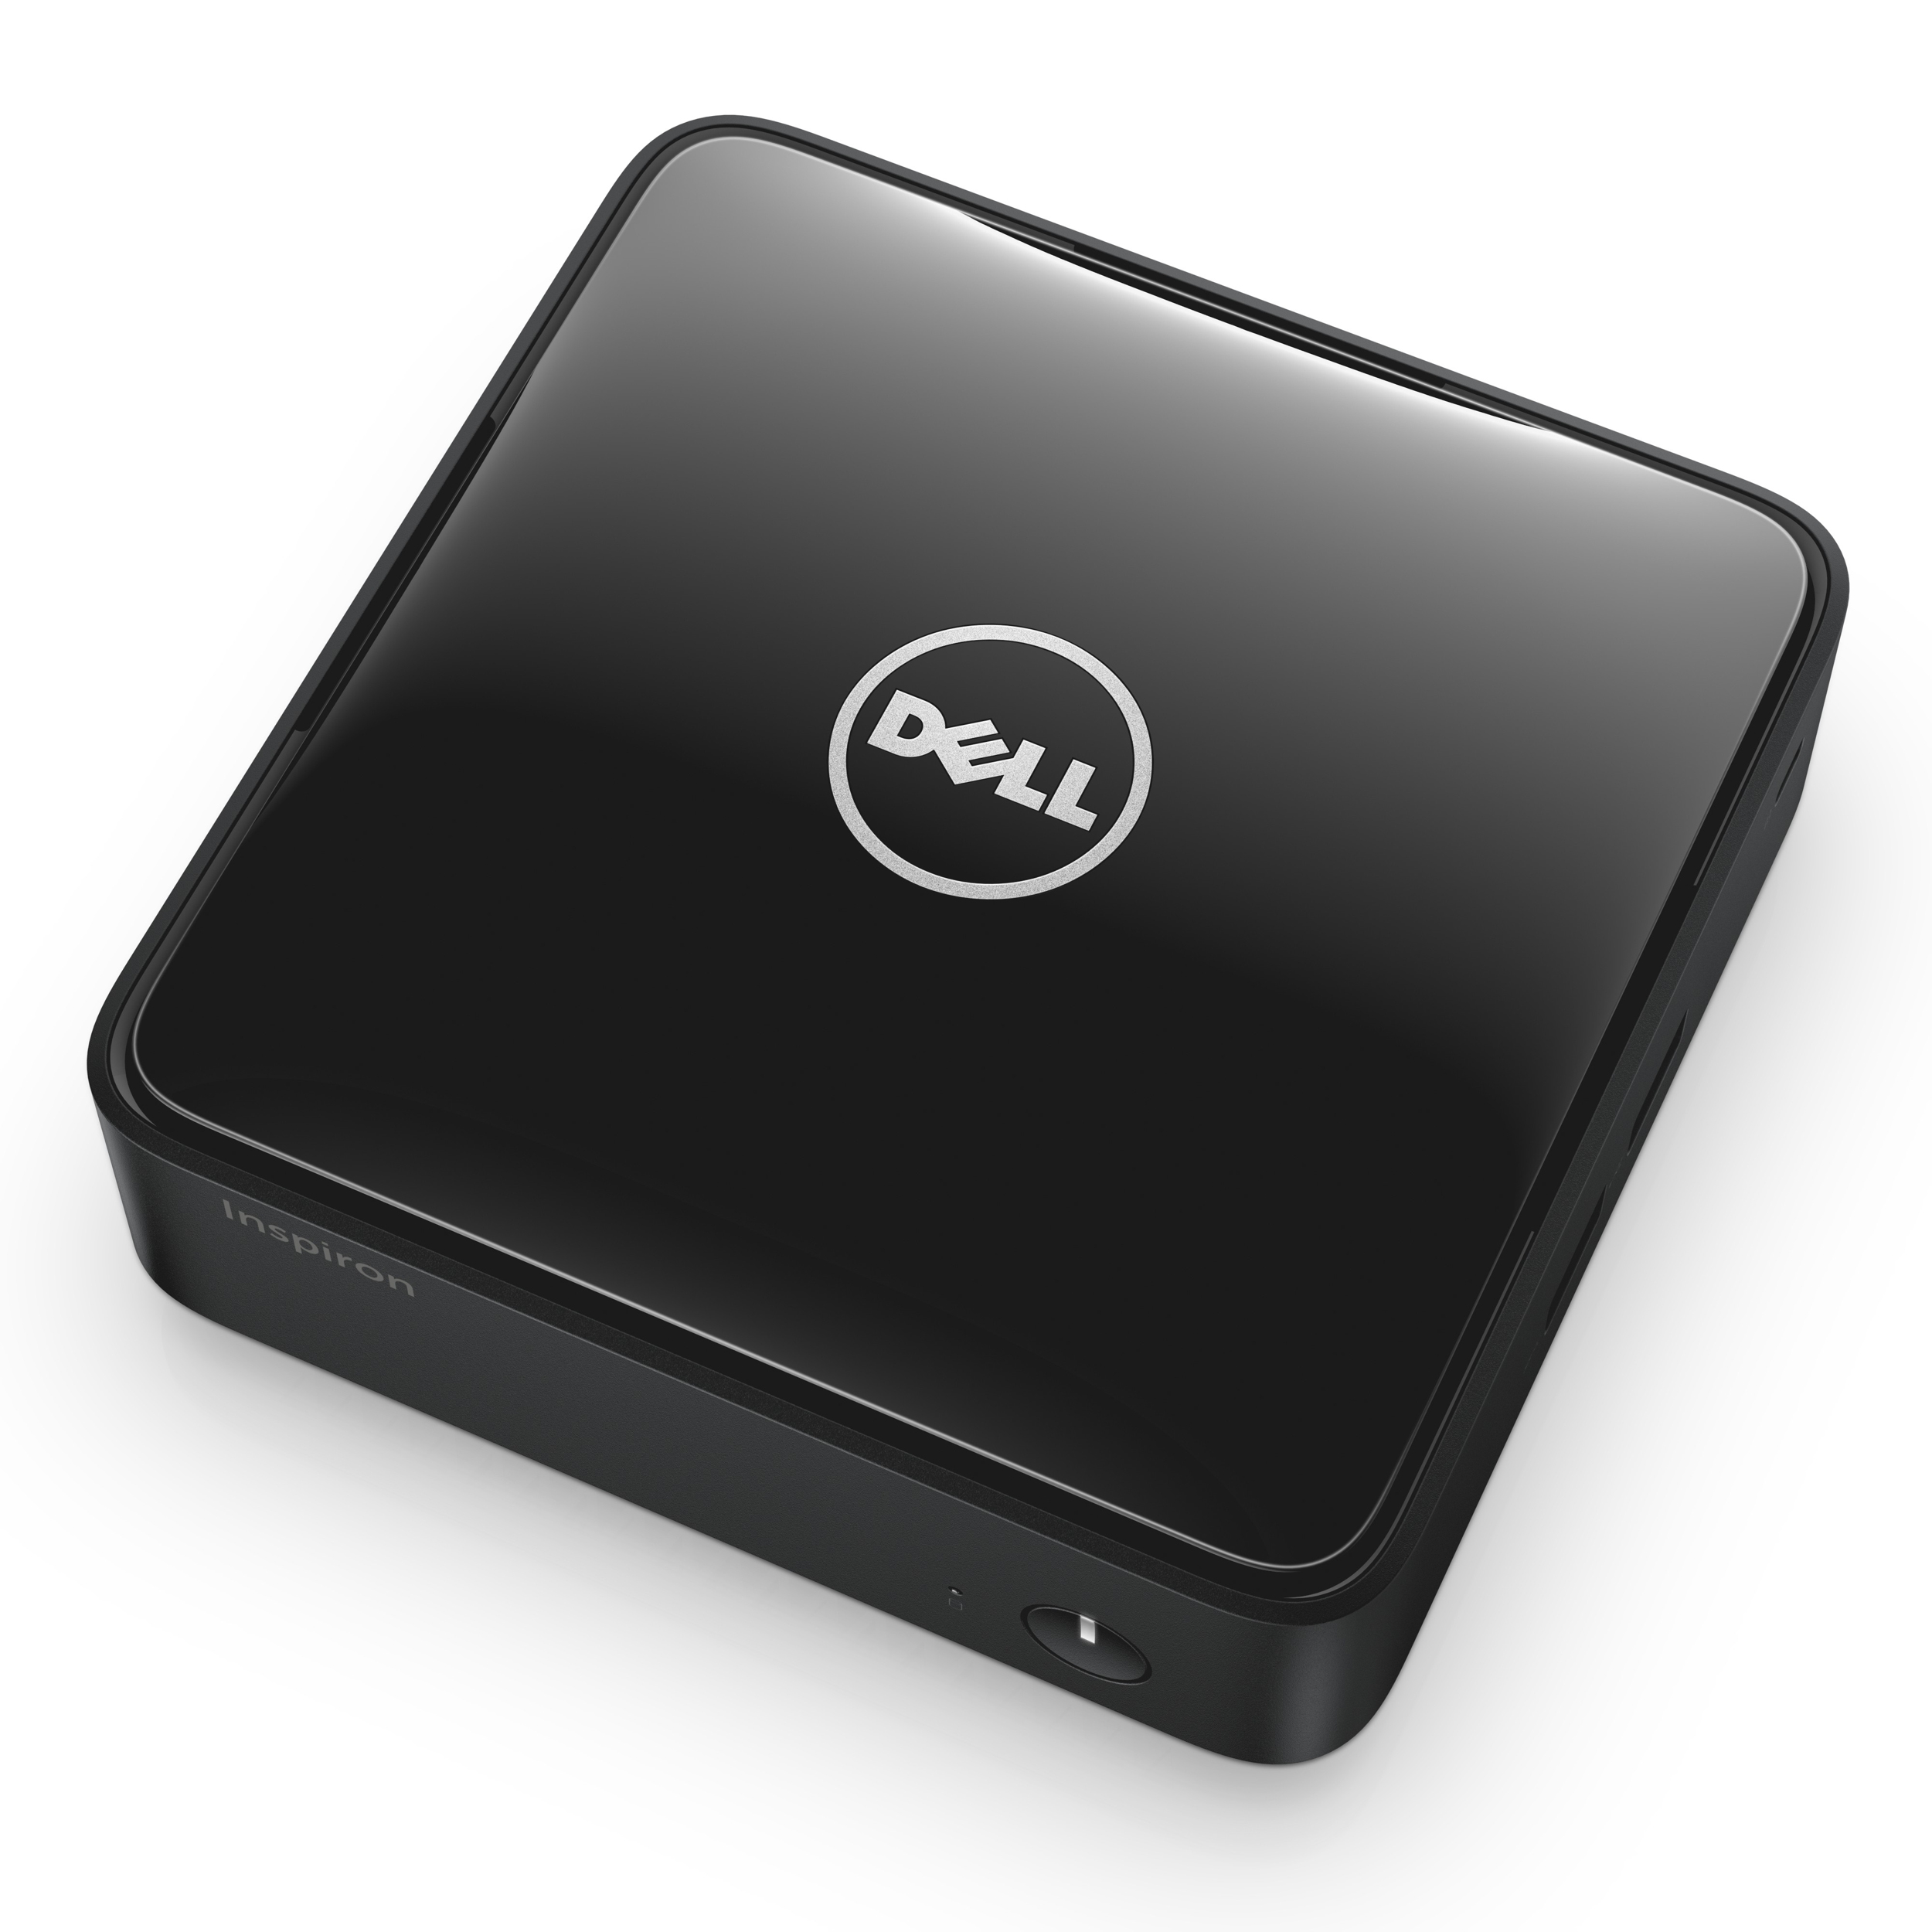 Dell Inspiron Micro Desktop Mini Rechner Mit Tablet Innenleben Für 250